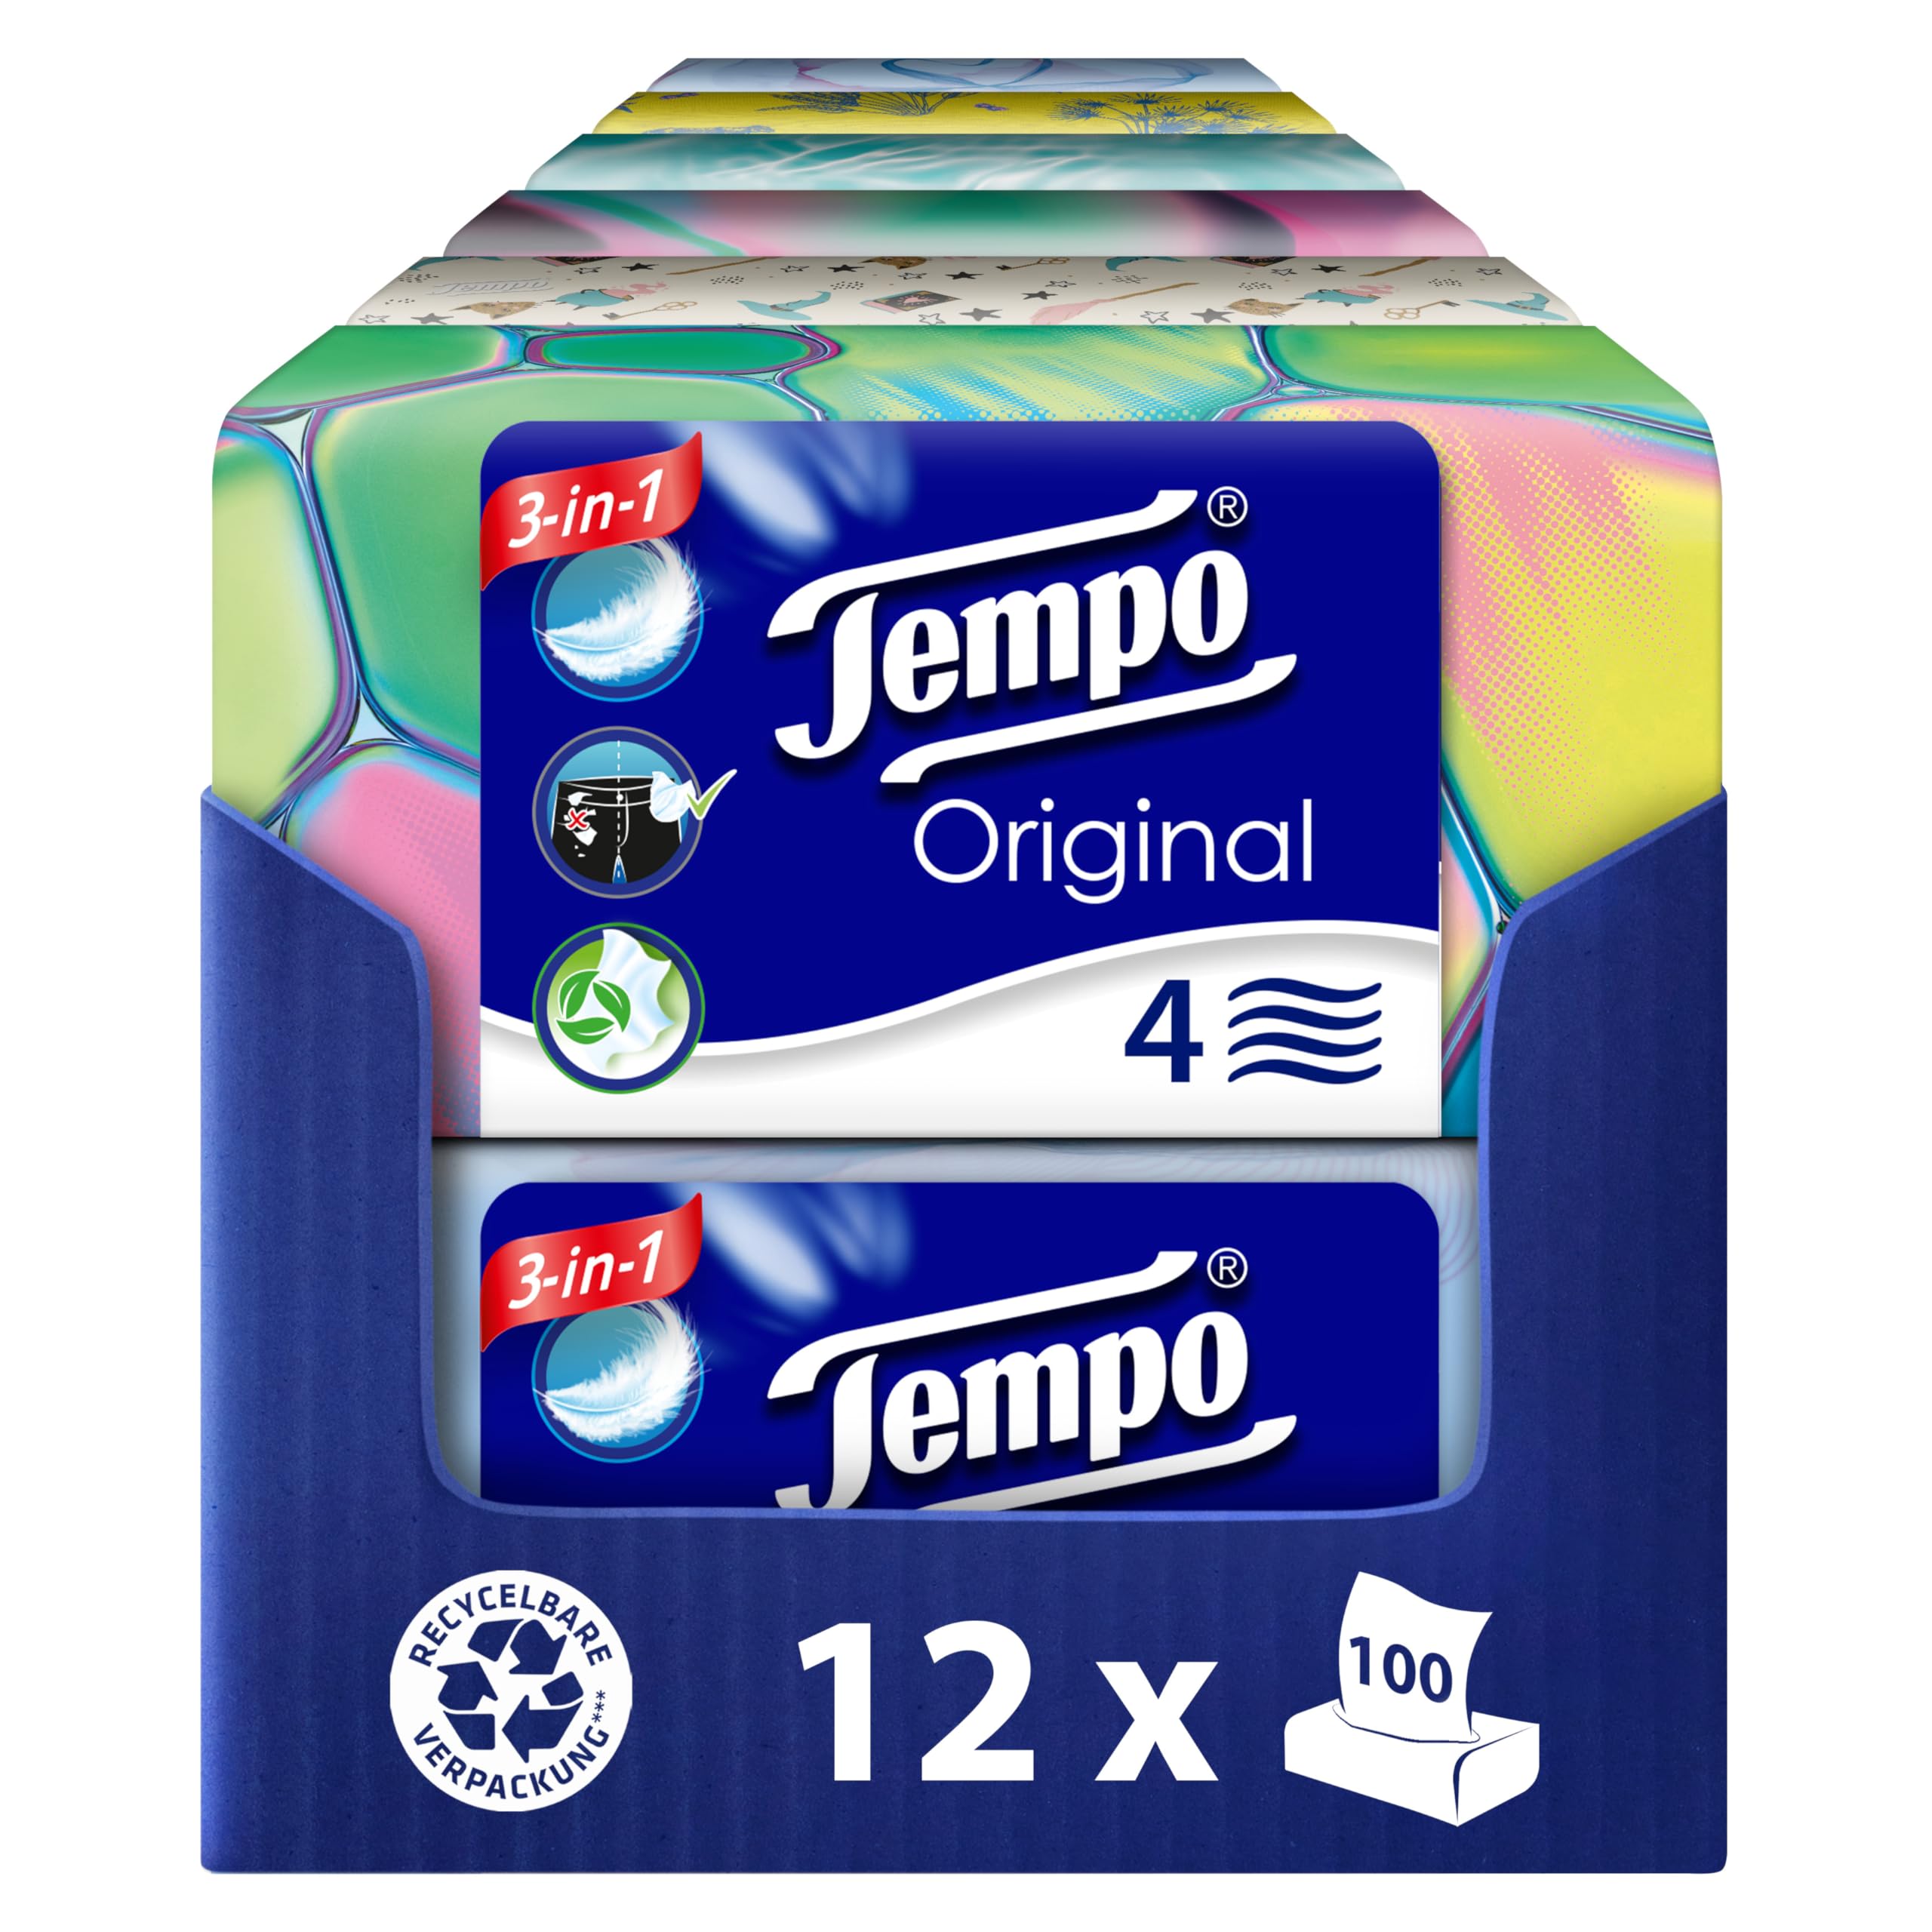 Tempo Original Taschentücher Box - Vorteilspack - 12 Boxen, 100 Tücher pro Box - extra starke, weiche Papiertaschentücher, waschmaschinenfest